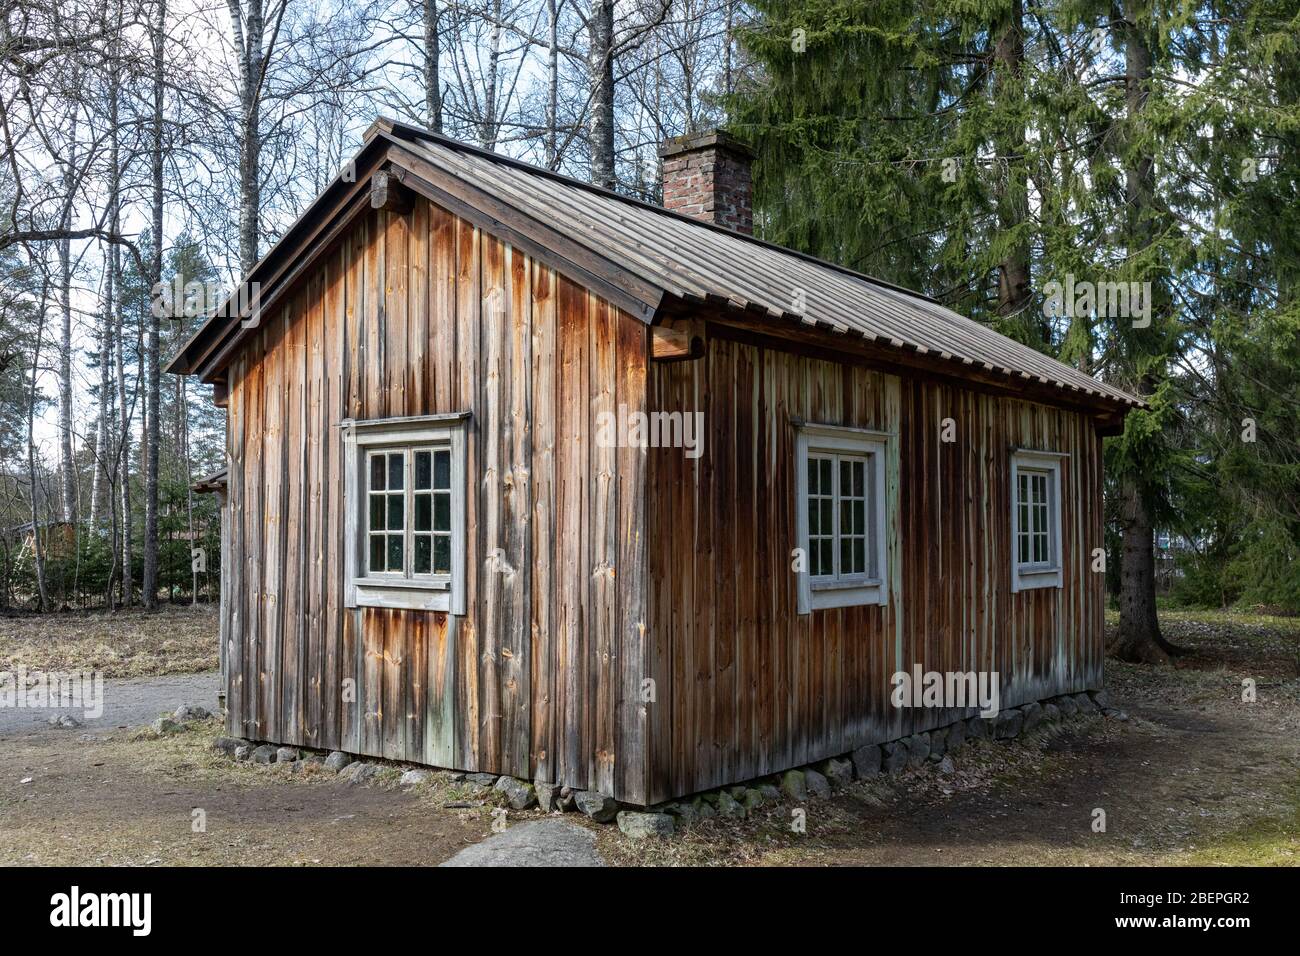 Ferienhaus, in dem Aleksis Kivi, finnischer Autor, im Jahr 1872 im Alter von 38 Jahren in Armut starb. Tuusula, Finnland. Stockfoto